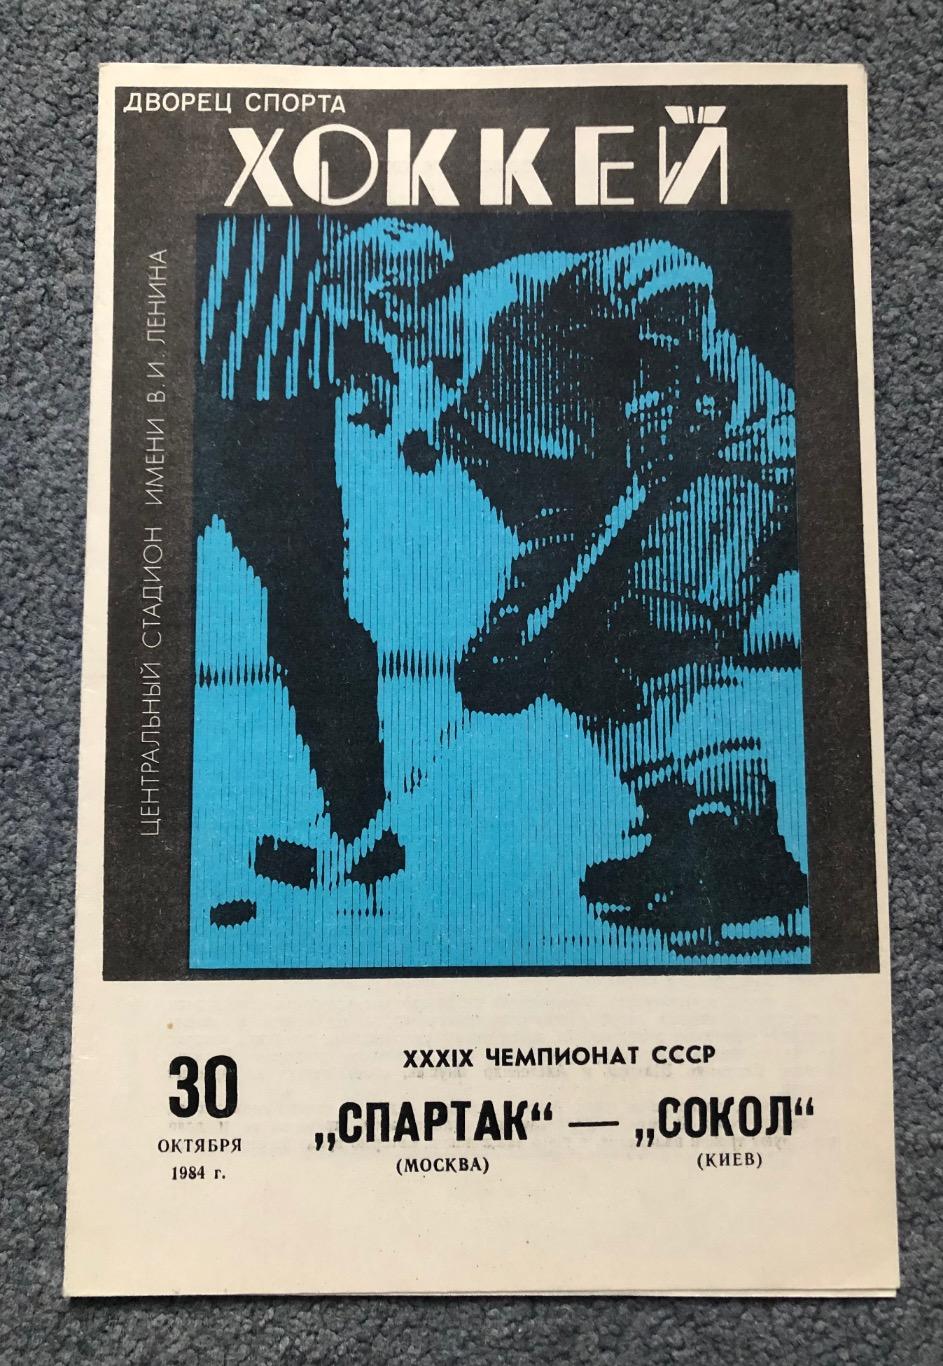 Спартак Москва - Сокол Киев, 30.10.1984